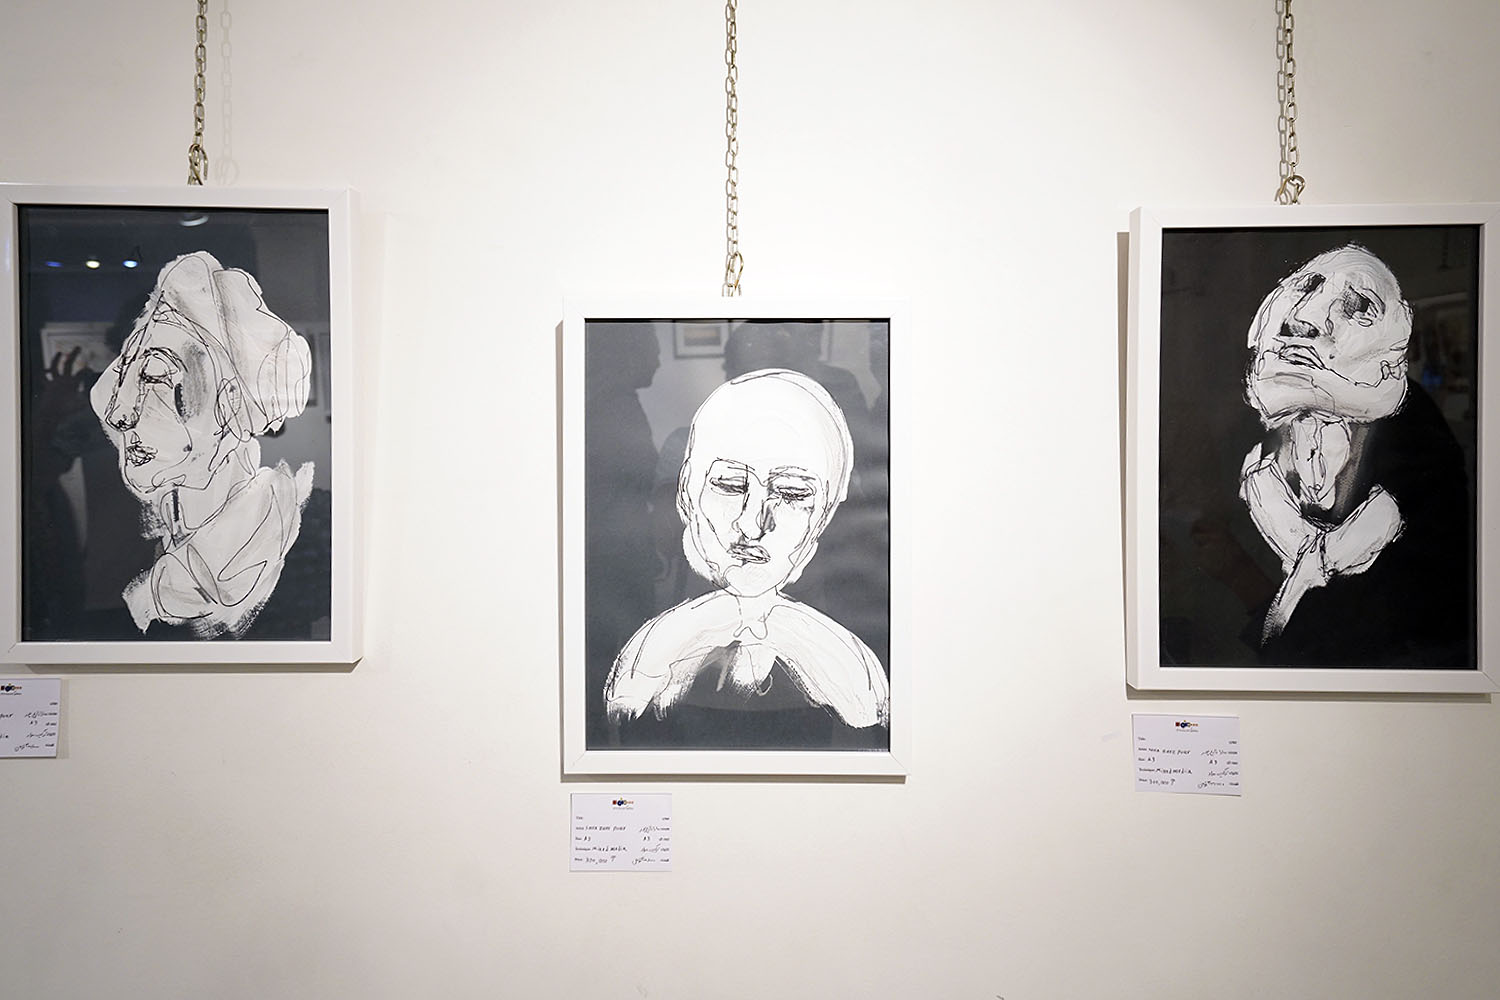  نمایشگاه گروهی عکس و نقاشی در گالری ژینوس